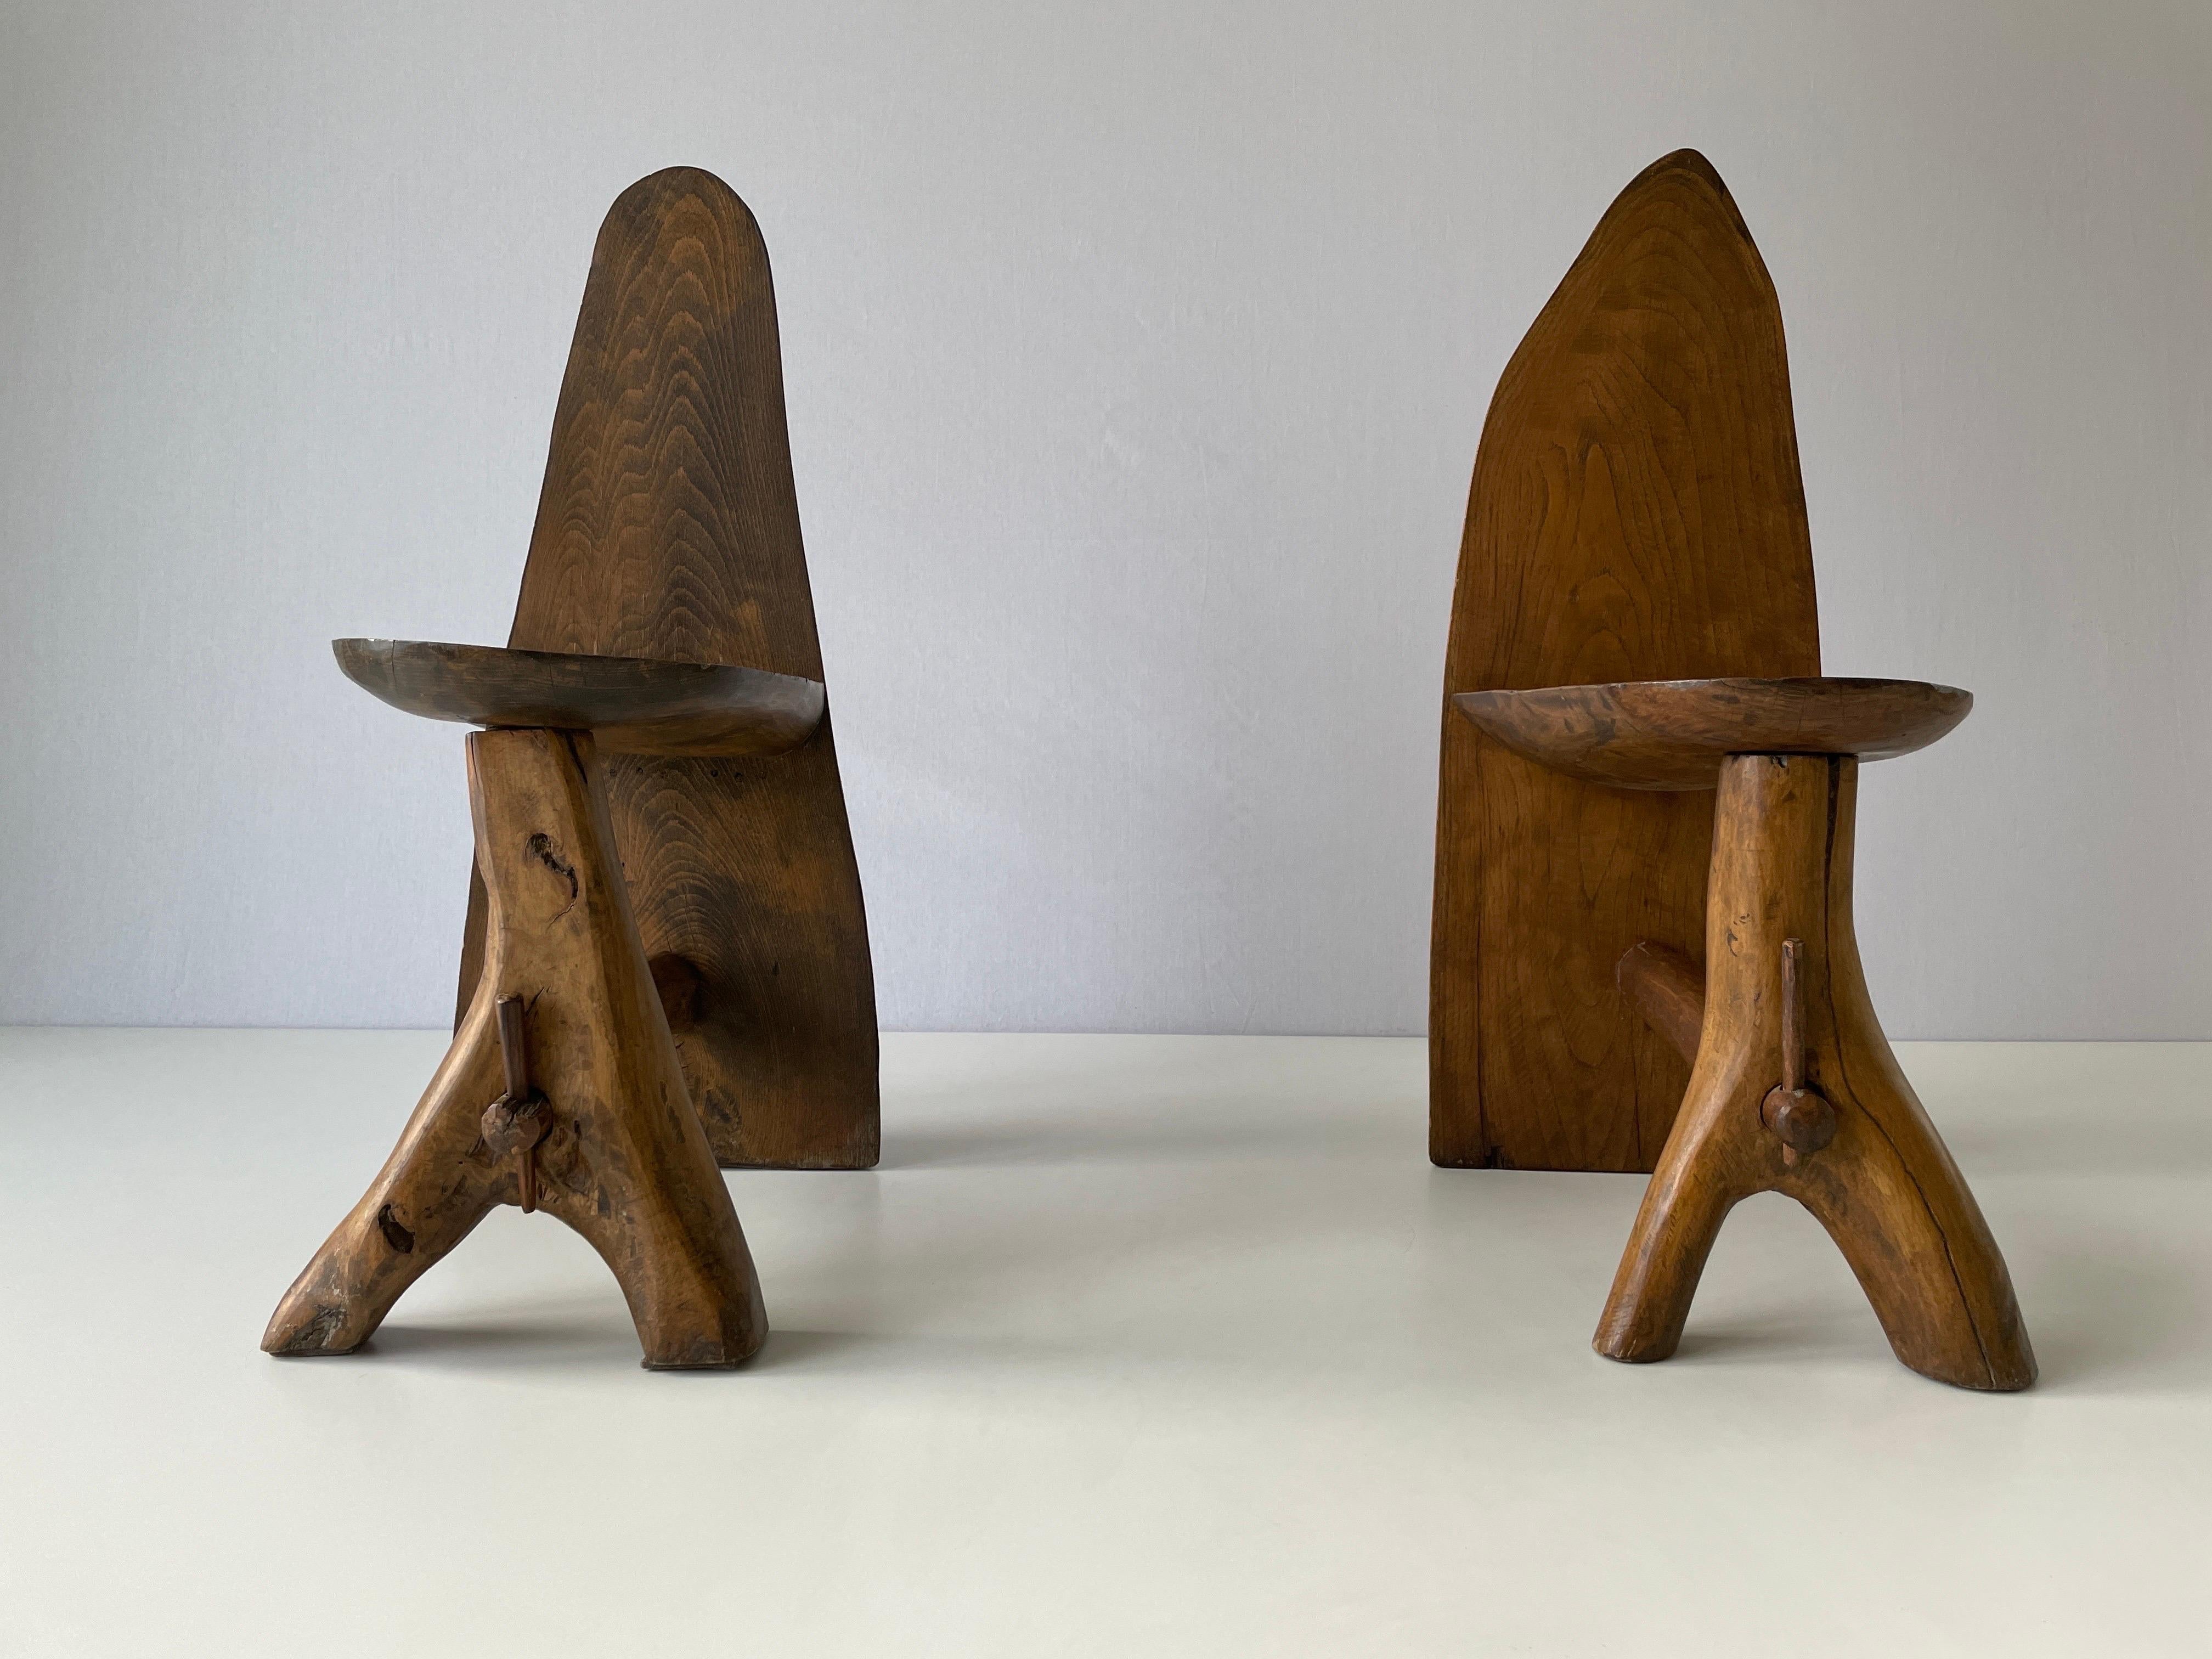 Paire de chaises en bois massif au design primitif, fabriquées à la main, années 1950, Italie

Usure conforme à l'âge et à l'utilisation.

Mesures : 
Hauteur : 75 cm
Largeur : 27 cm
Profondeur : 47 cm
Hauteur de l'assise : 37 cm